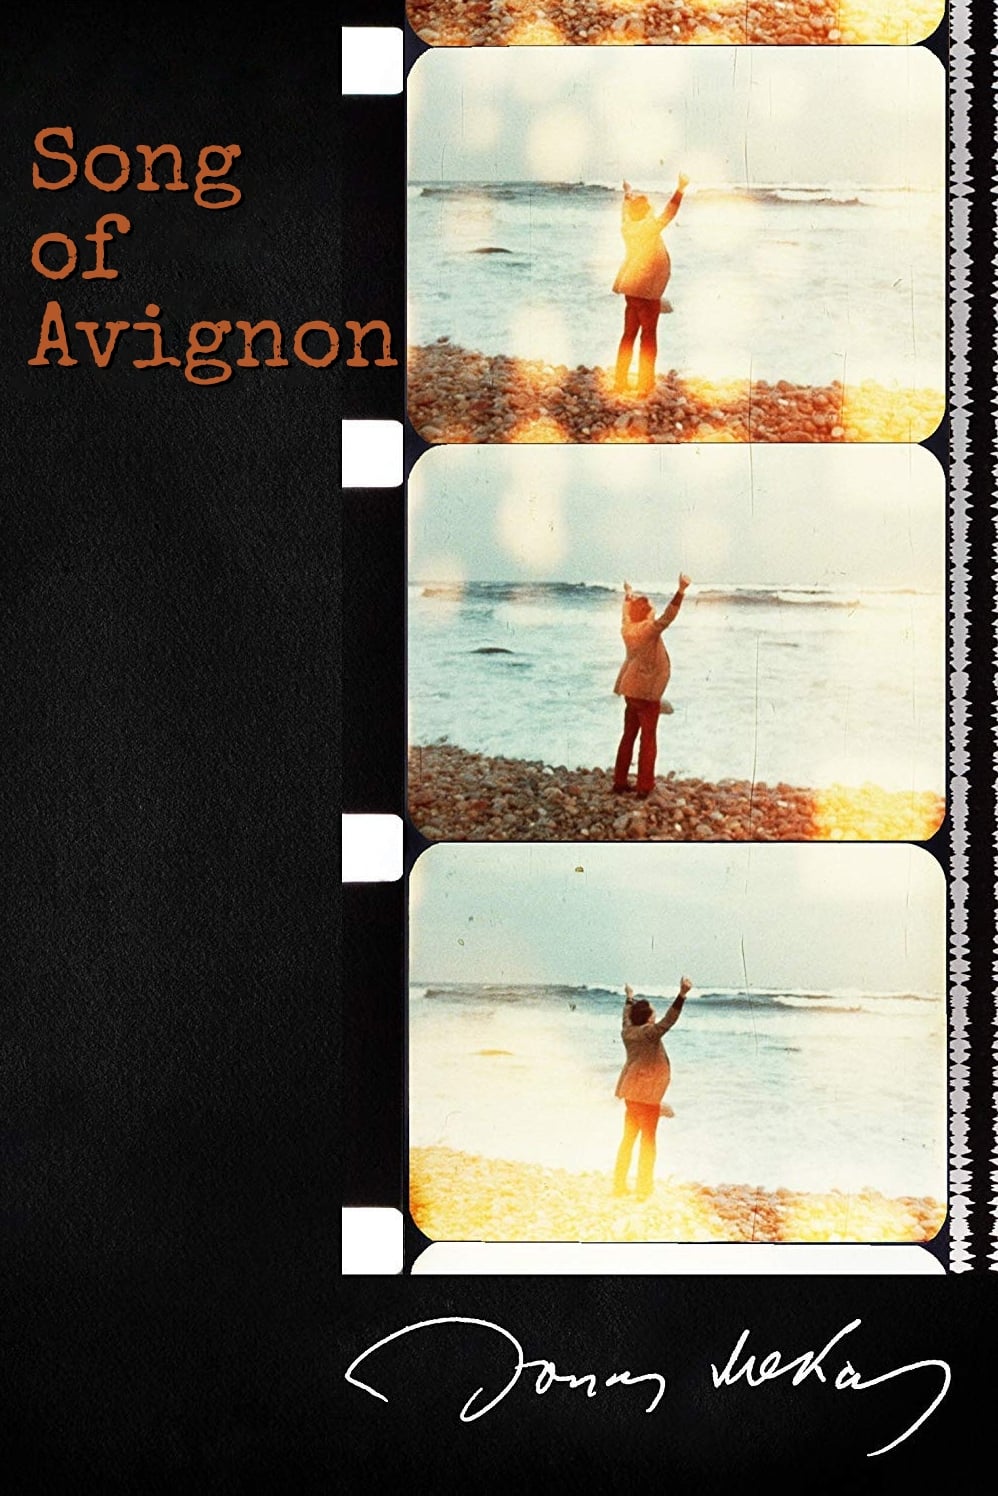 Song of Avignon (1998)